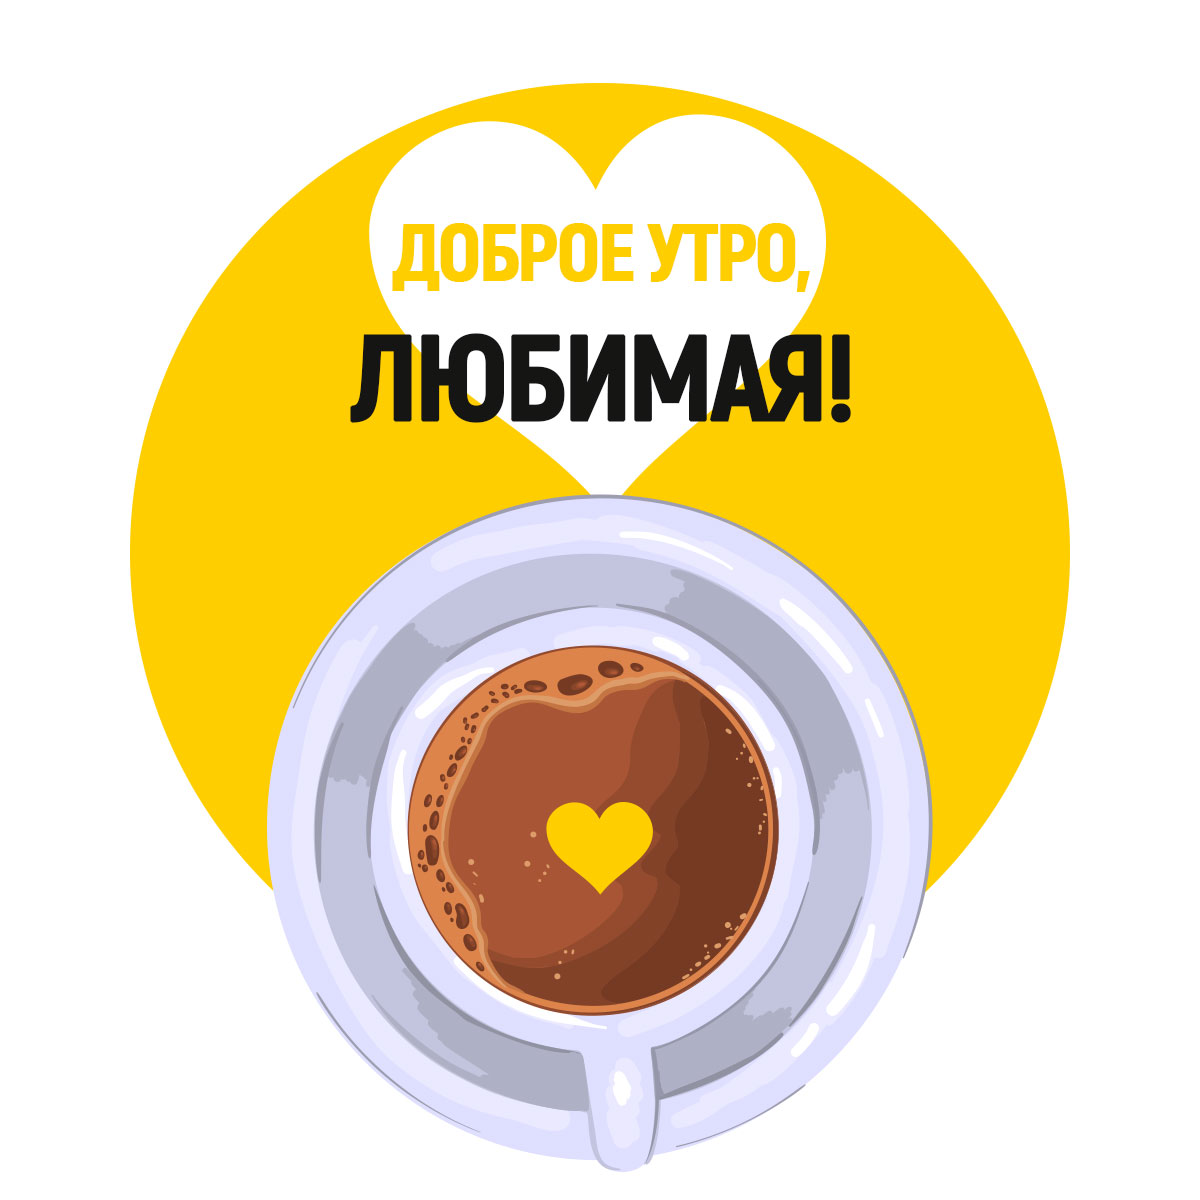 Картинка с текстом доброе утро любимая и чашка какао на жёлтом круге с сердечком.